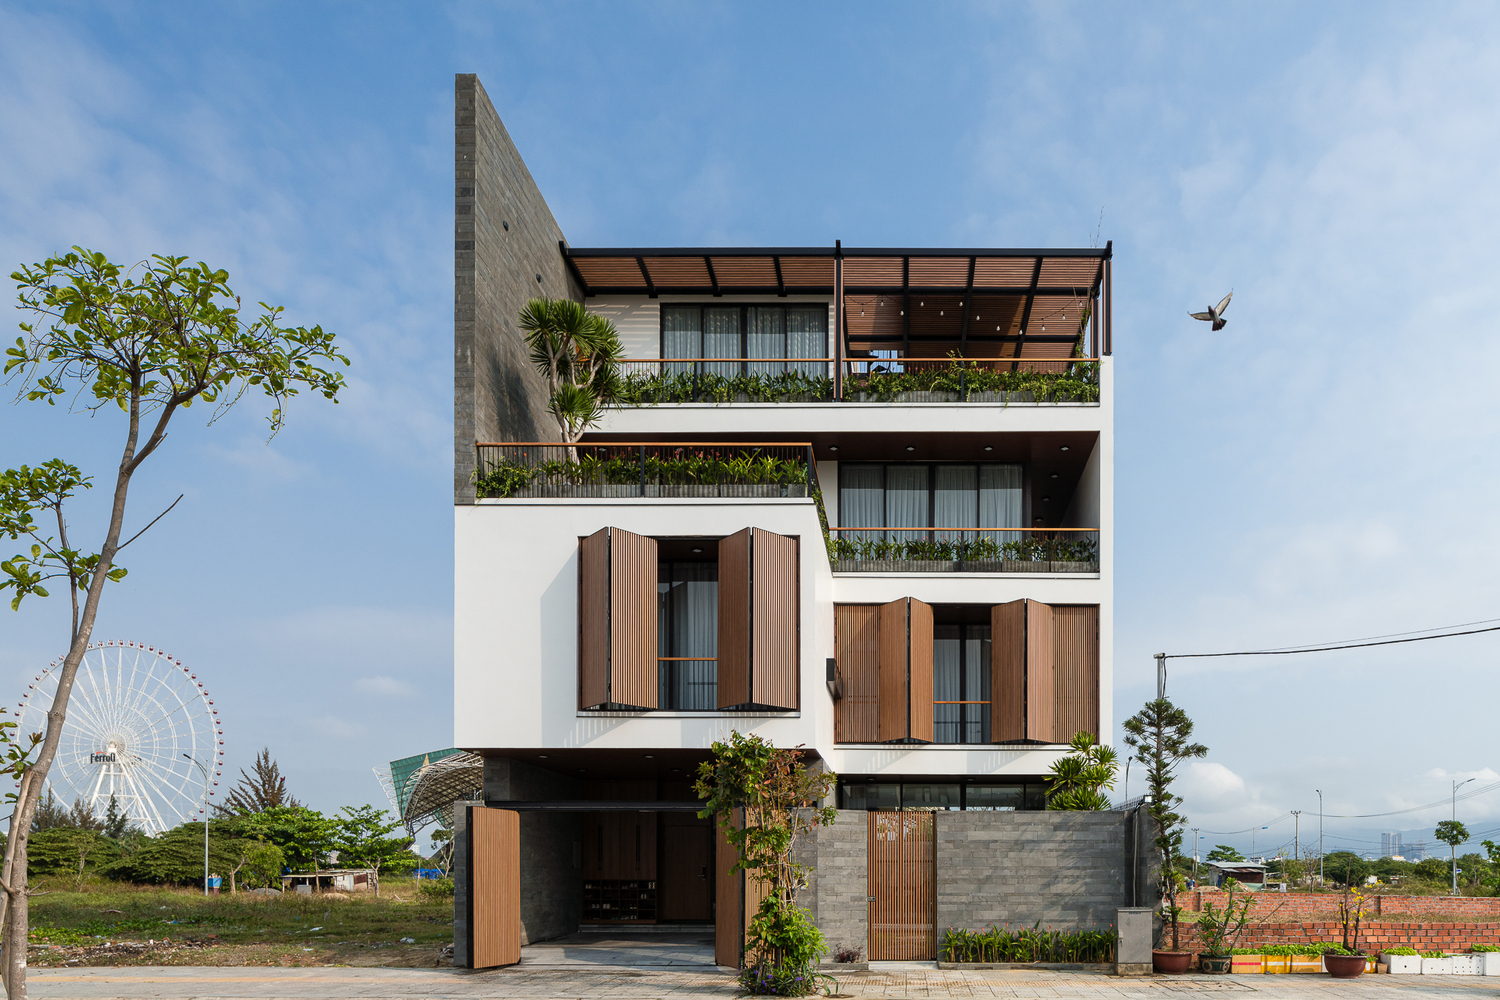 hình ảnh toàn cảnh biệt thự 4 tầng ở Đà Nẵng với tông màu trắng và gỗ nâu kết hợp hài hòa